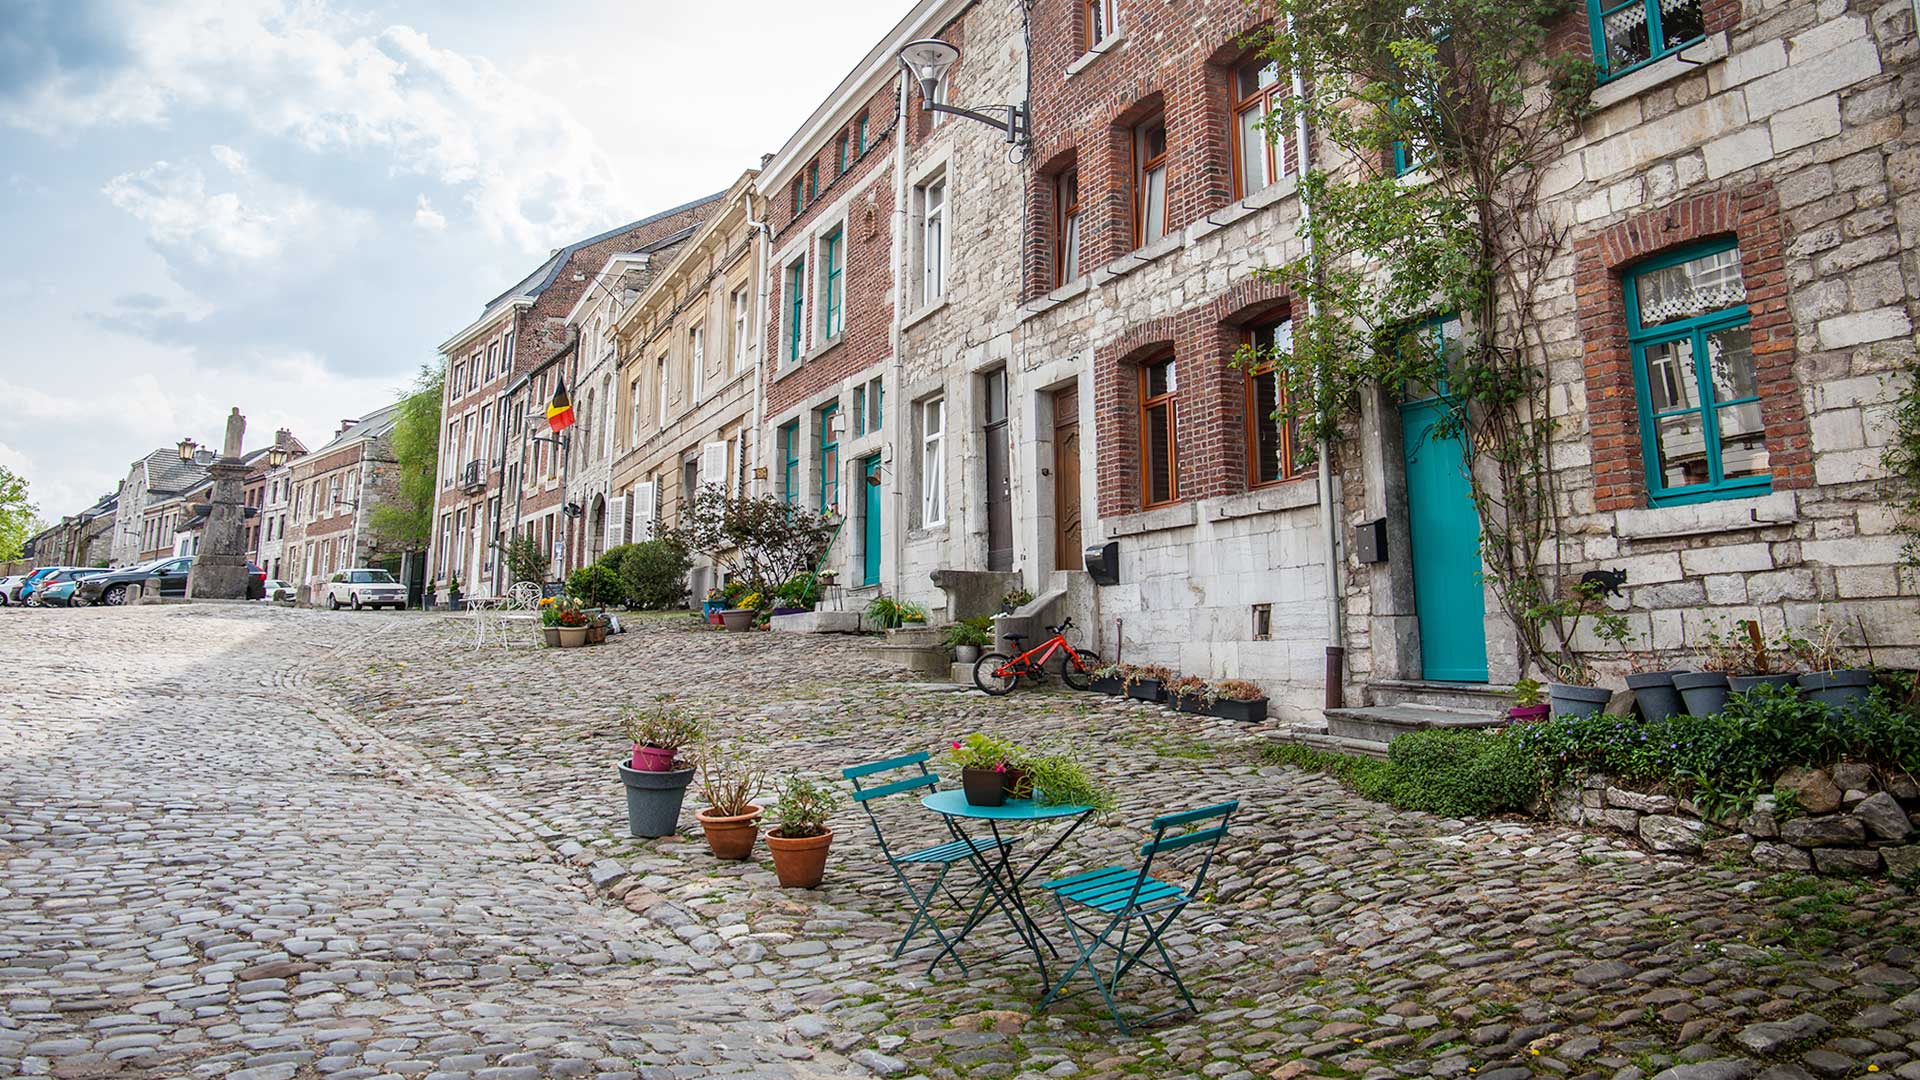 cobblestone street in belgium